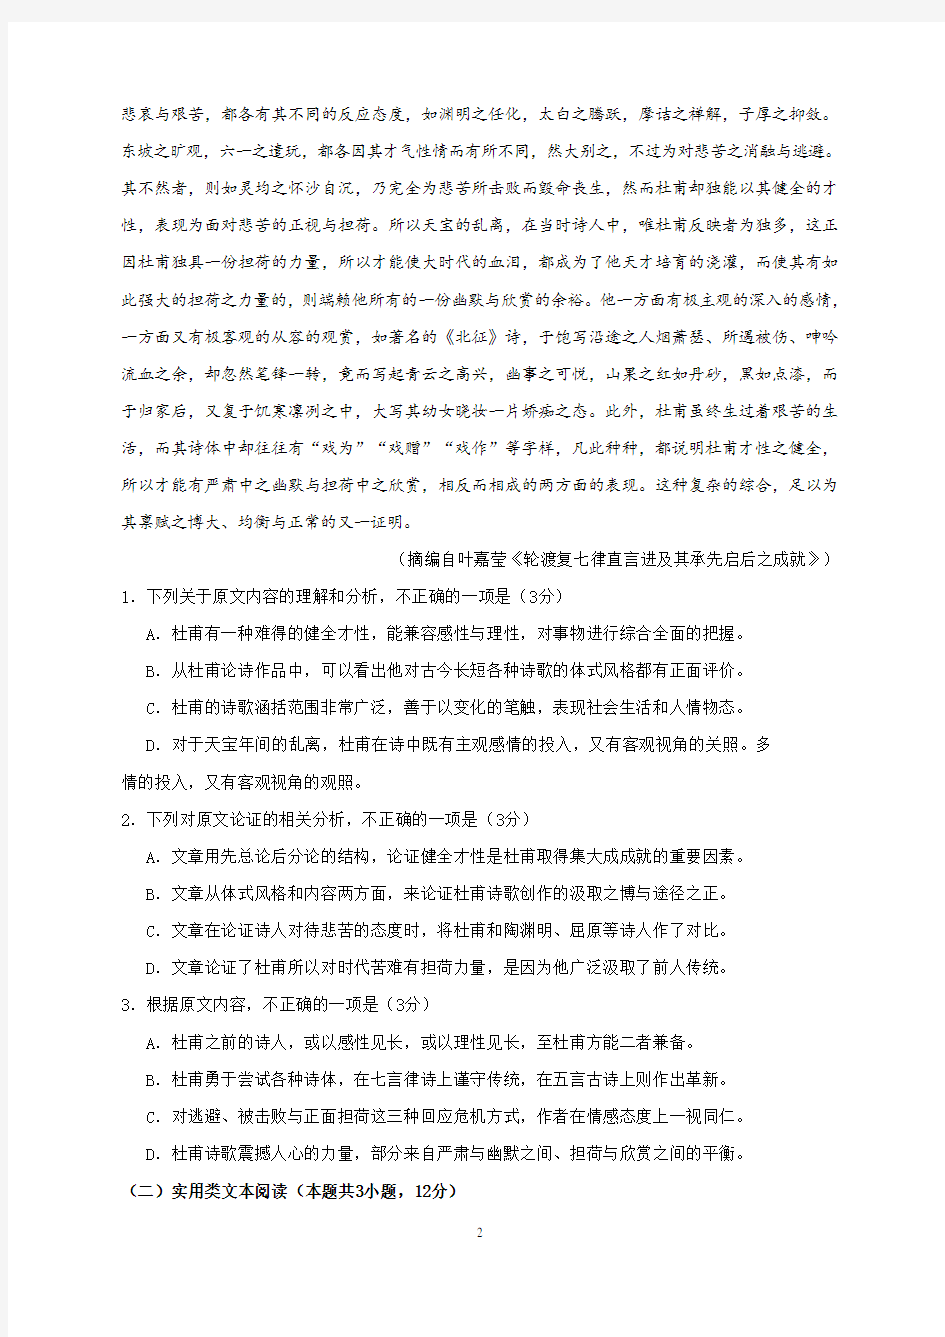 2019年陕西省高考语文试题与答案